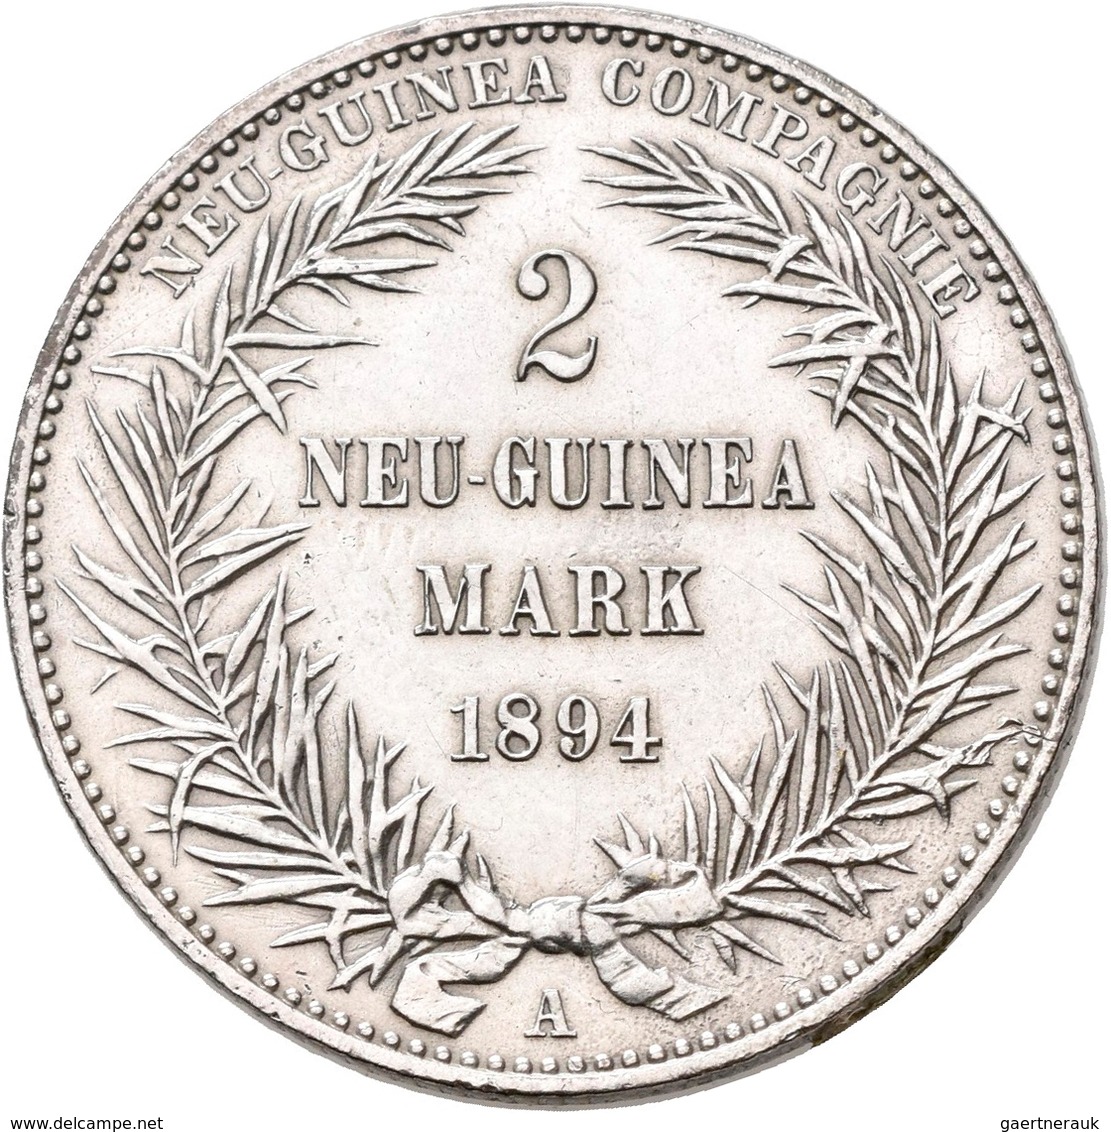 Deutsch-Neuguinea: 2 Neu-Guinea Mark 1894 A, Paradiesvogel, Jaeger 706, Kratzer, Sehr Schön-vorzügli - Nouvelle Guinée Allemande